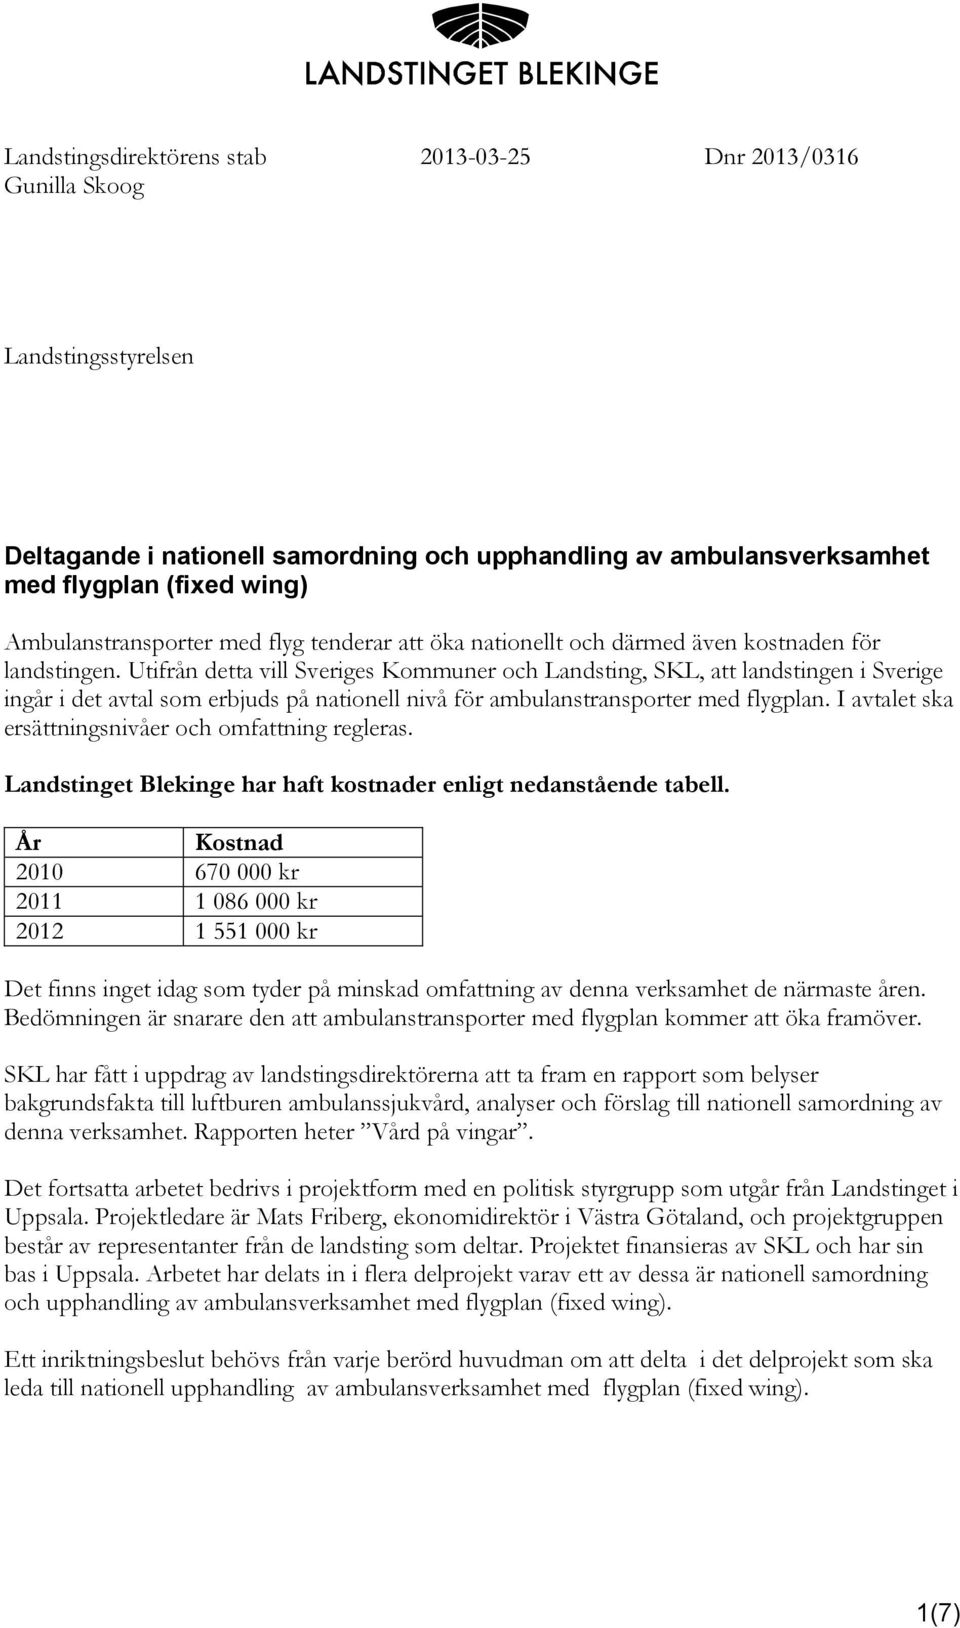 Utifrån detta vill Sveriges Kommuner och Landsting, SKL, att landstingen i Sverige ingår i det avtal som erbjuds på nationell nivå för ambulanstransporter med flygplan.